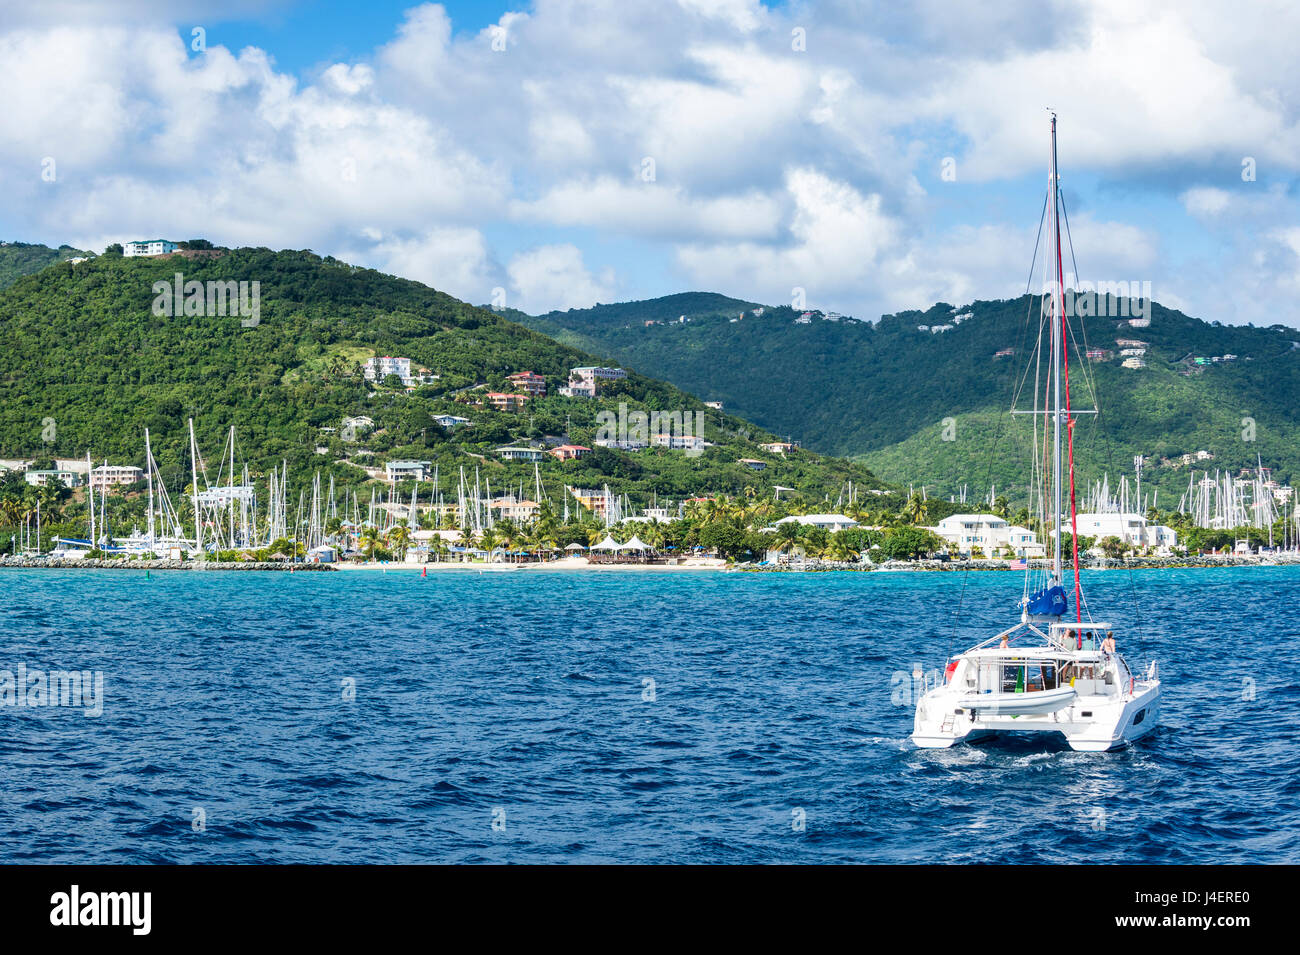 Tortola, Îles Vierges britanniques, Antilles, Caraïbes, Amérique Centrale Banque D'Images